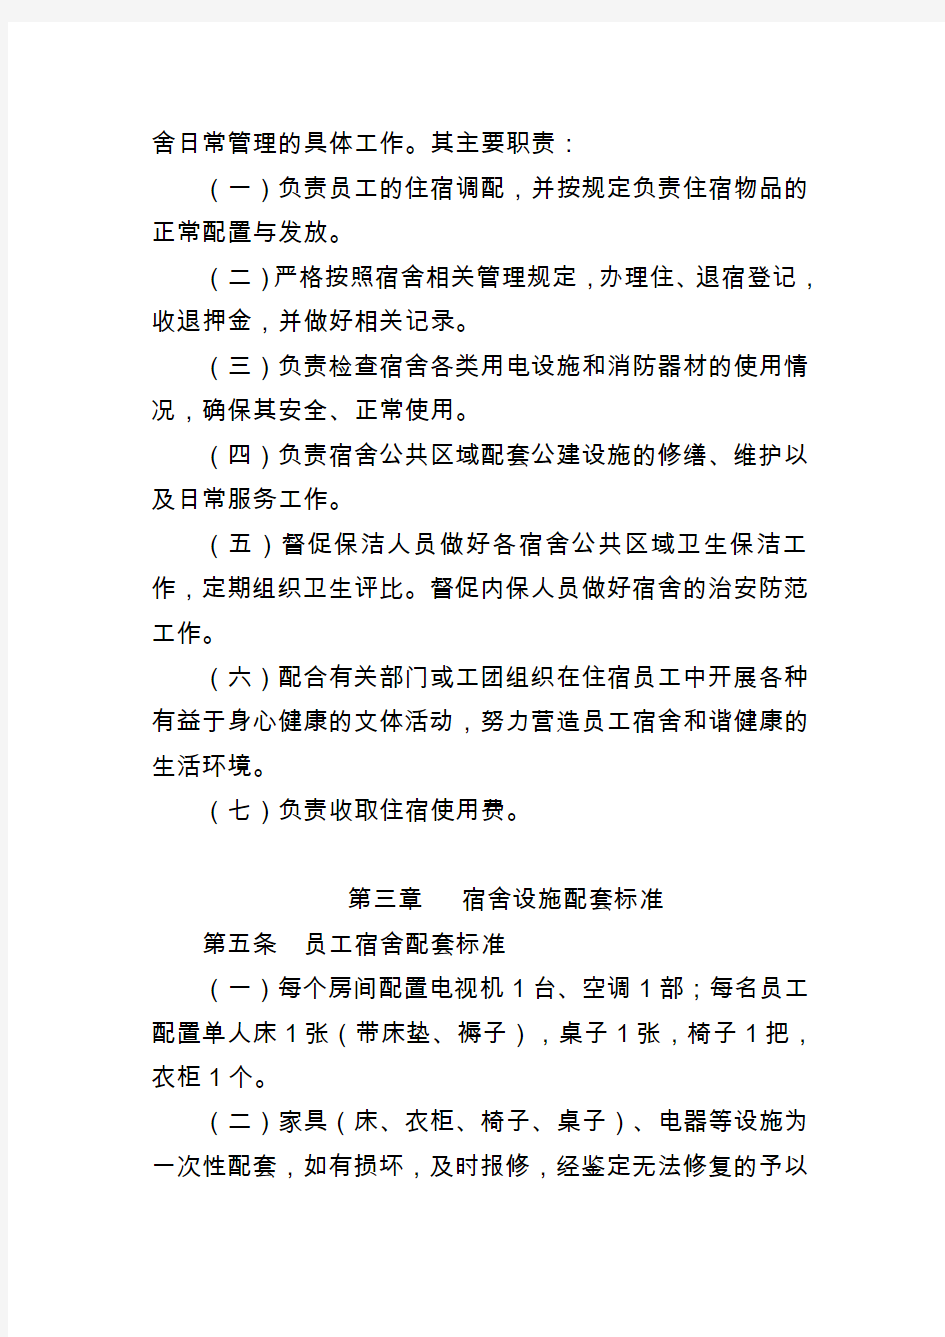 中国寰球工程公司总部员工宿舍管理办法(修订)